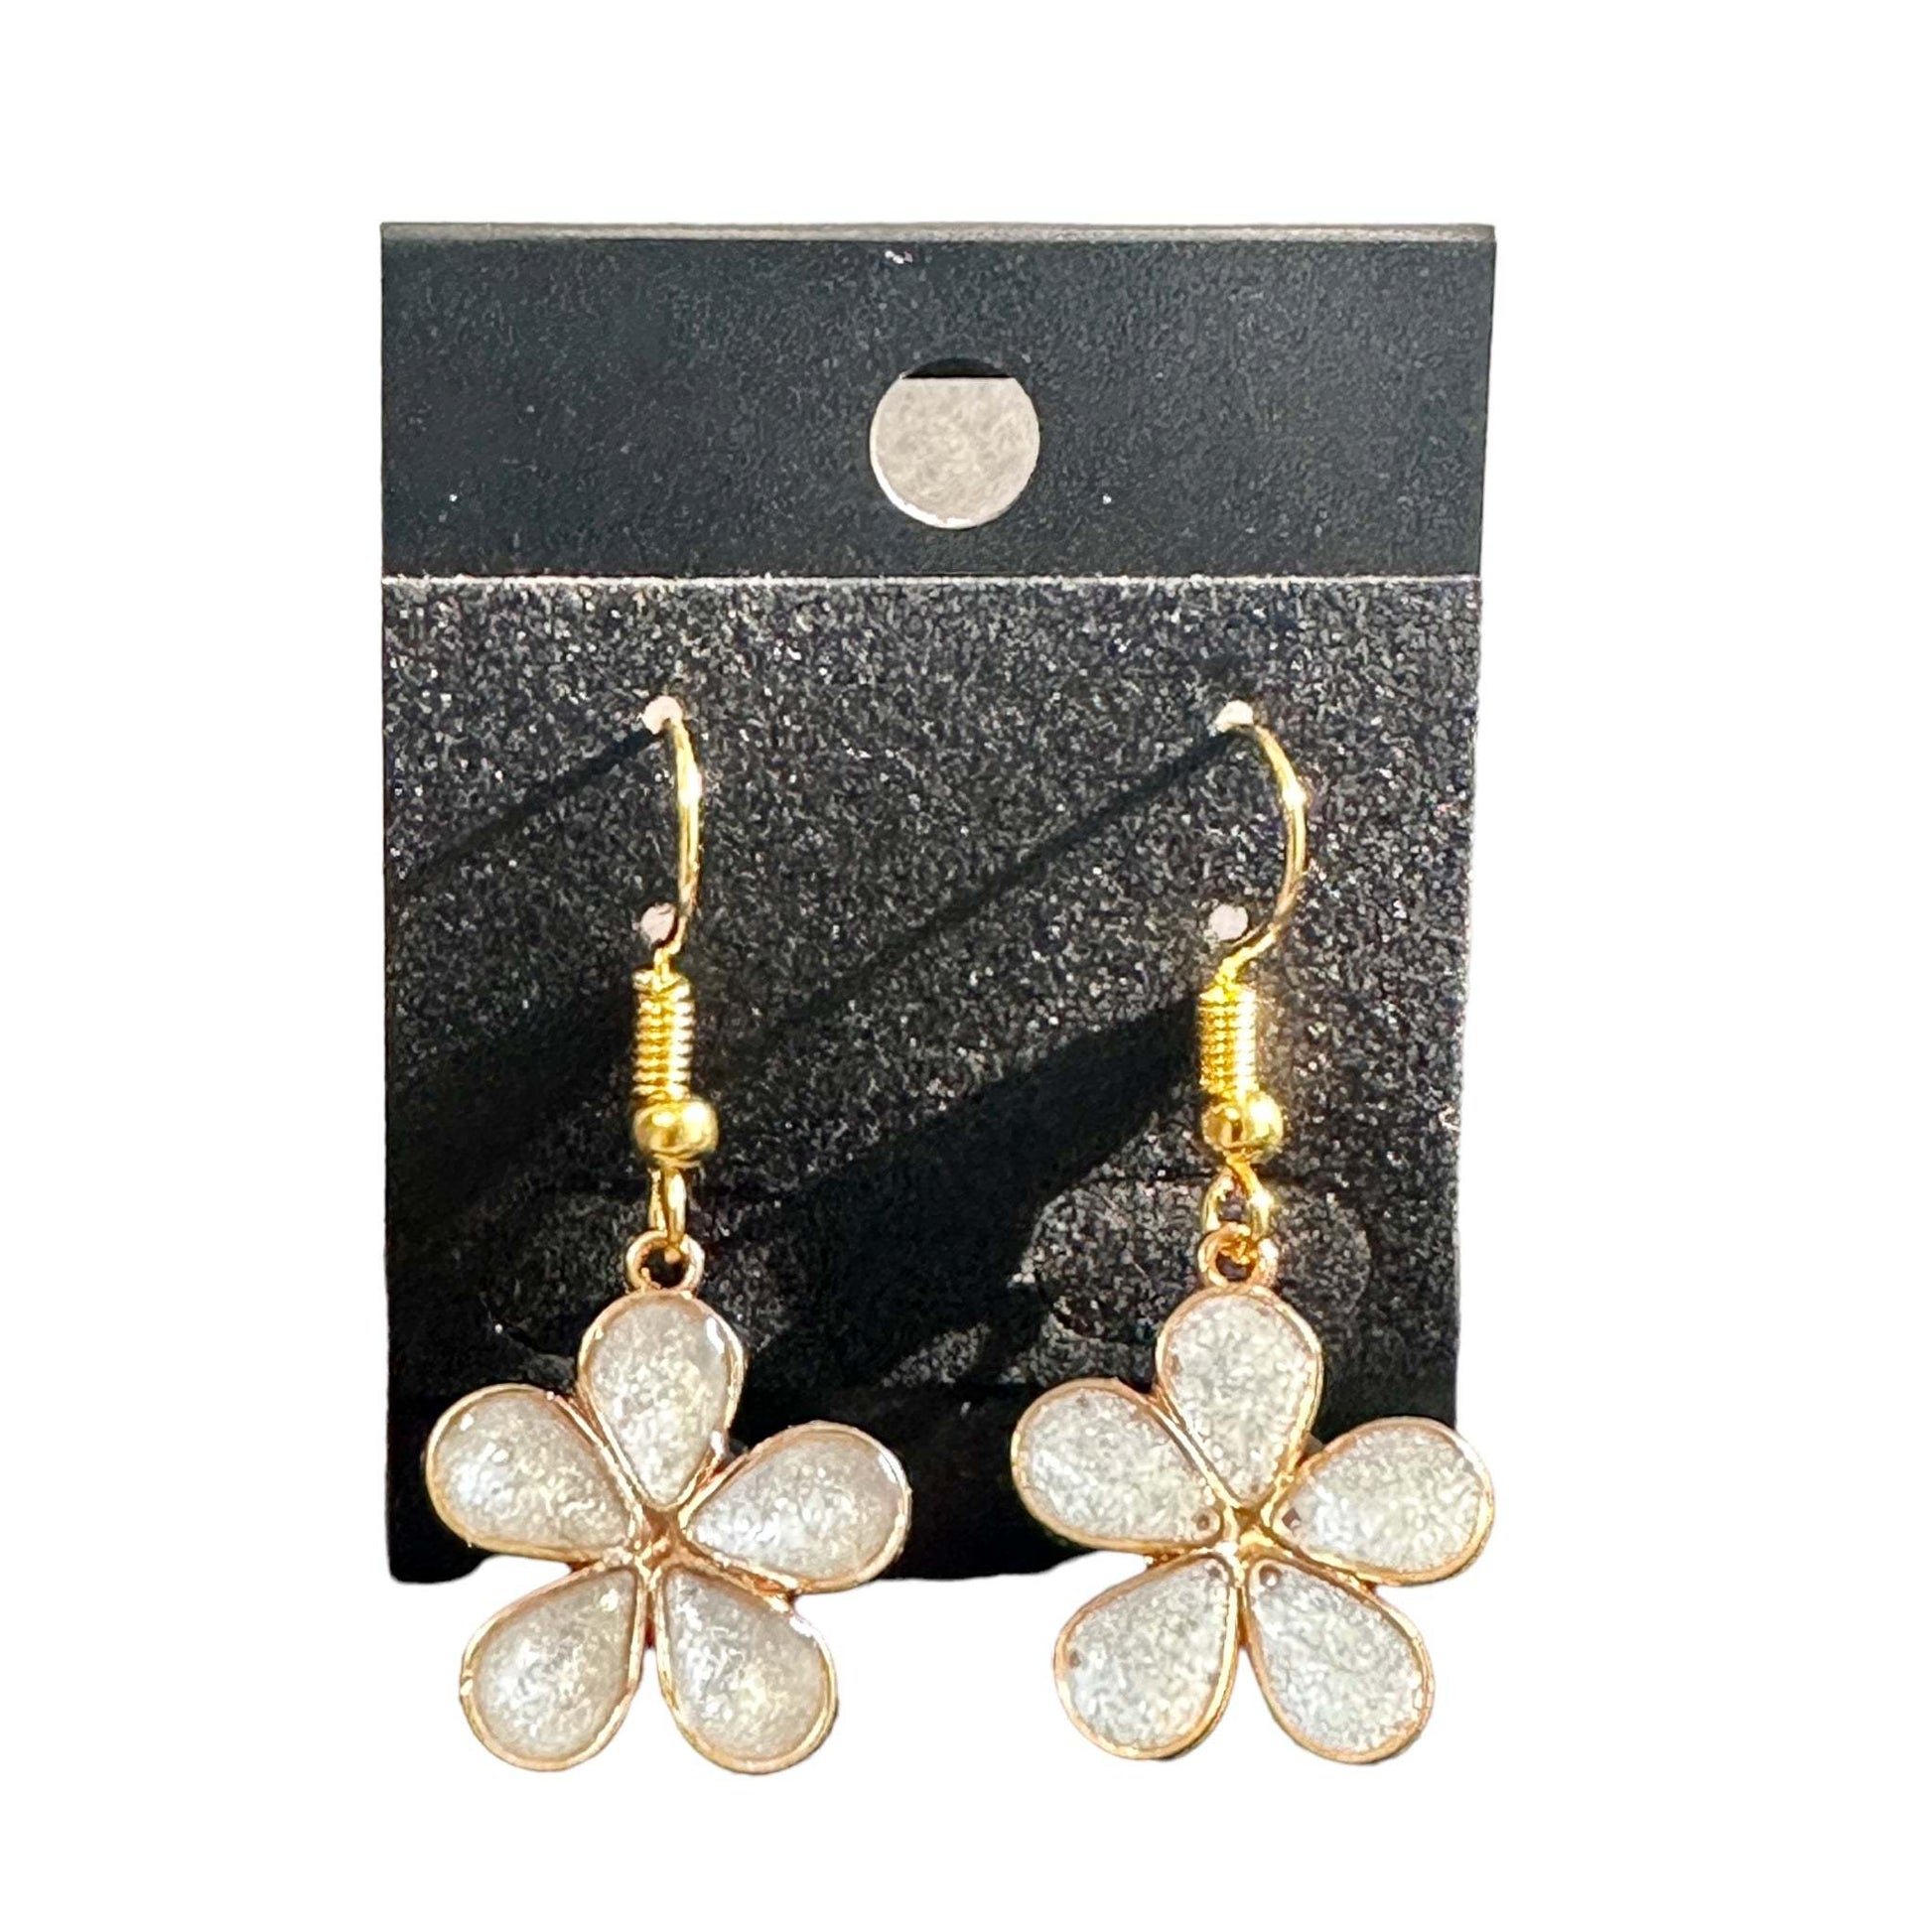 Golden Bloom - Handmade White Petal Flower Resin EarringsEarring Handmade Resin Flower Earring Set- White Petals & Glitter